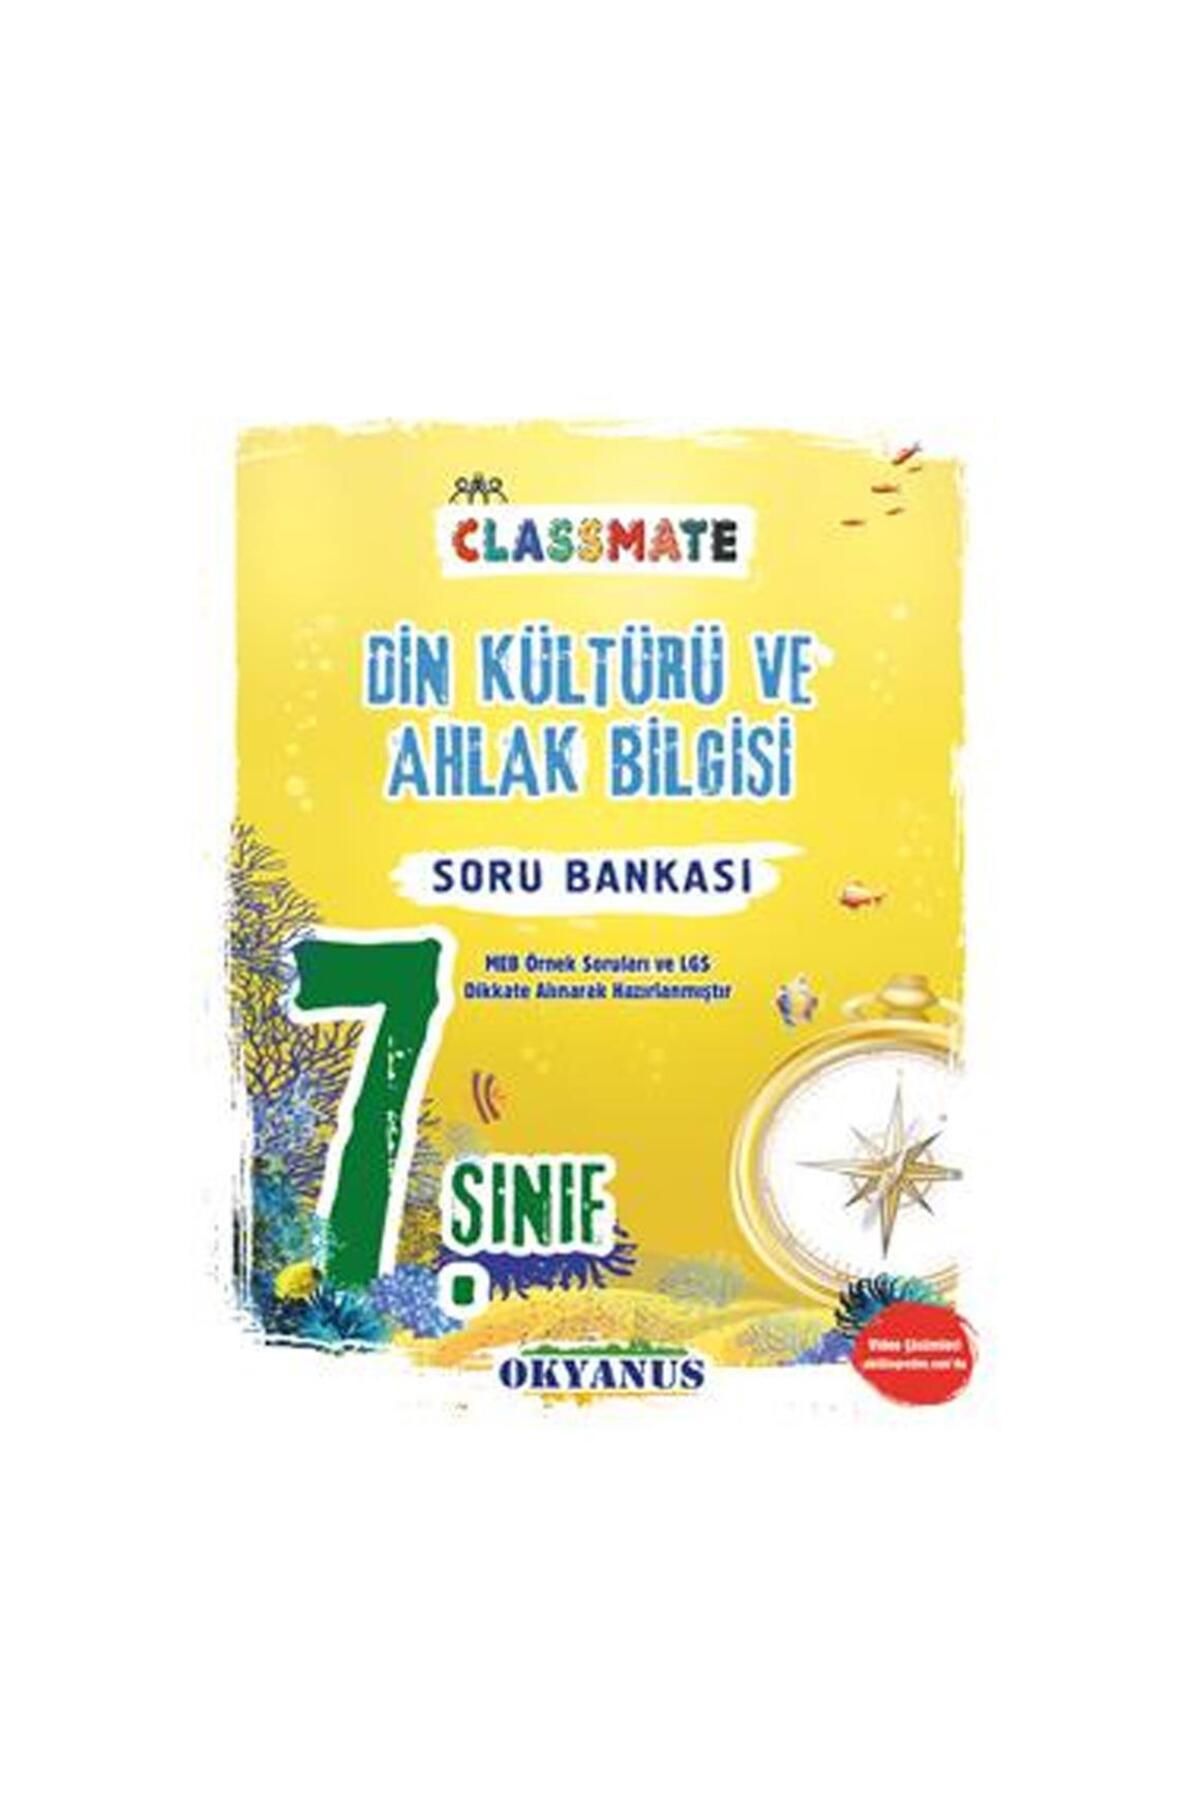 Okyanus Yayınları 7. Sınıf Classmate Din Kültürü Ve Ahlak Bilgisi Soru Bankası